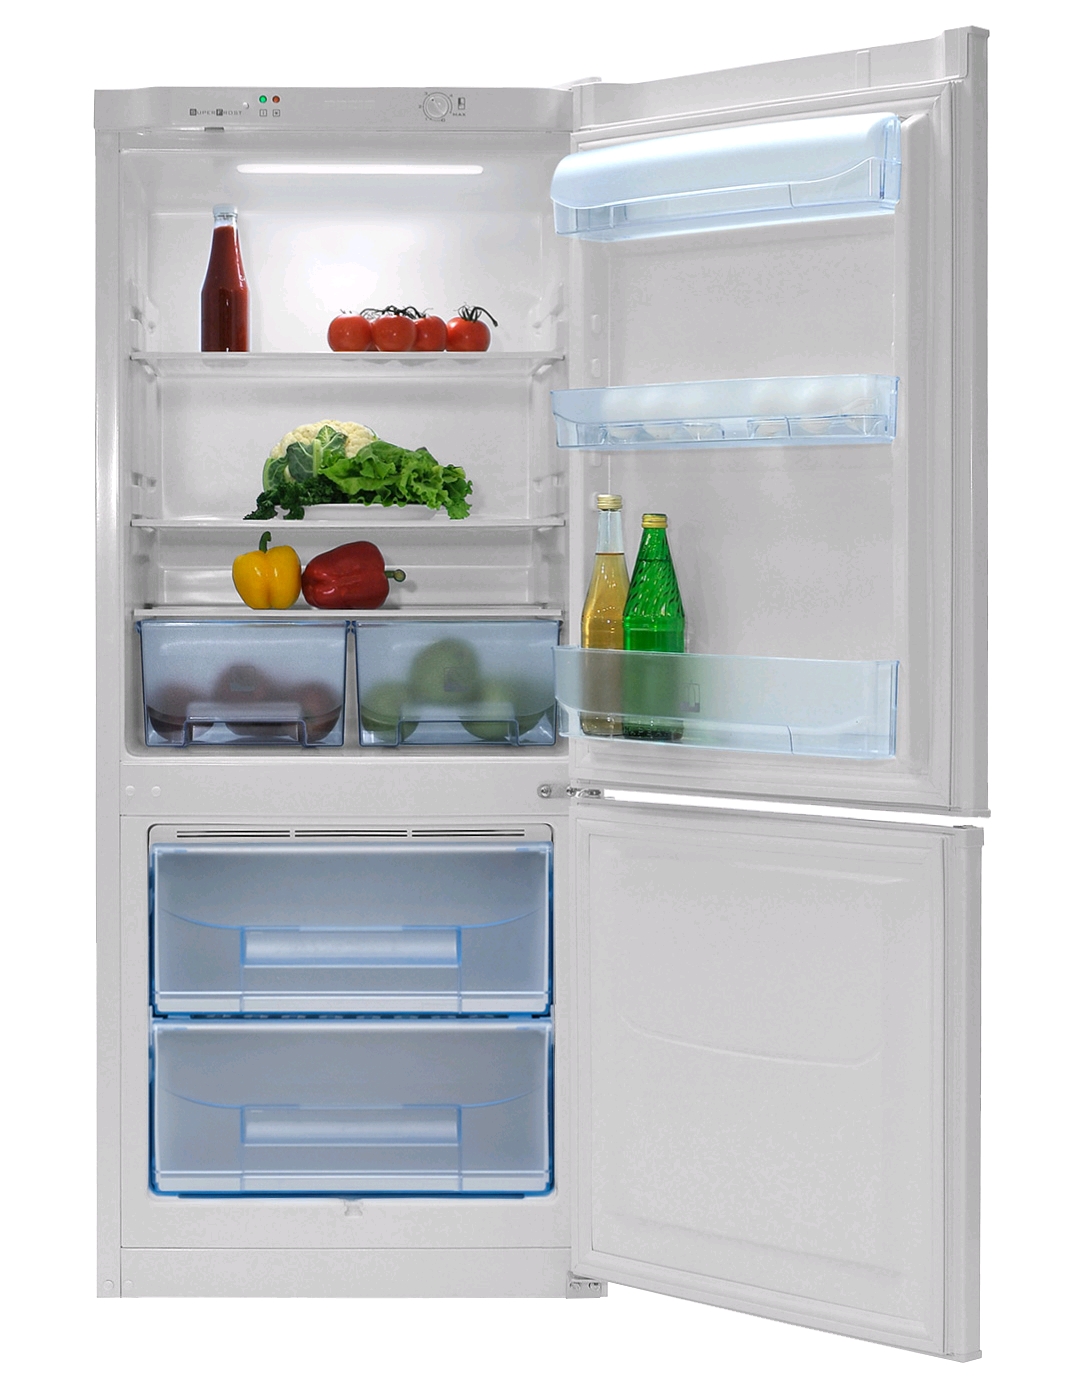 Pozis RK-101 серебристый холодильник